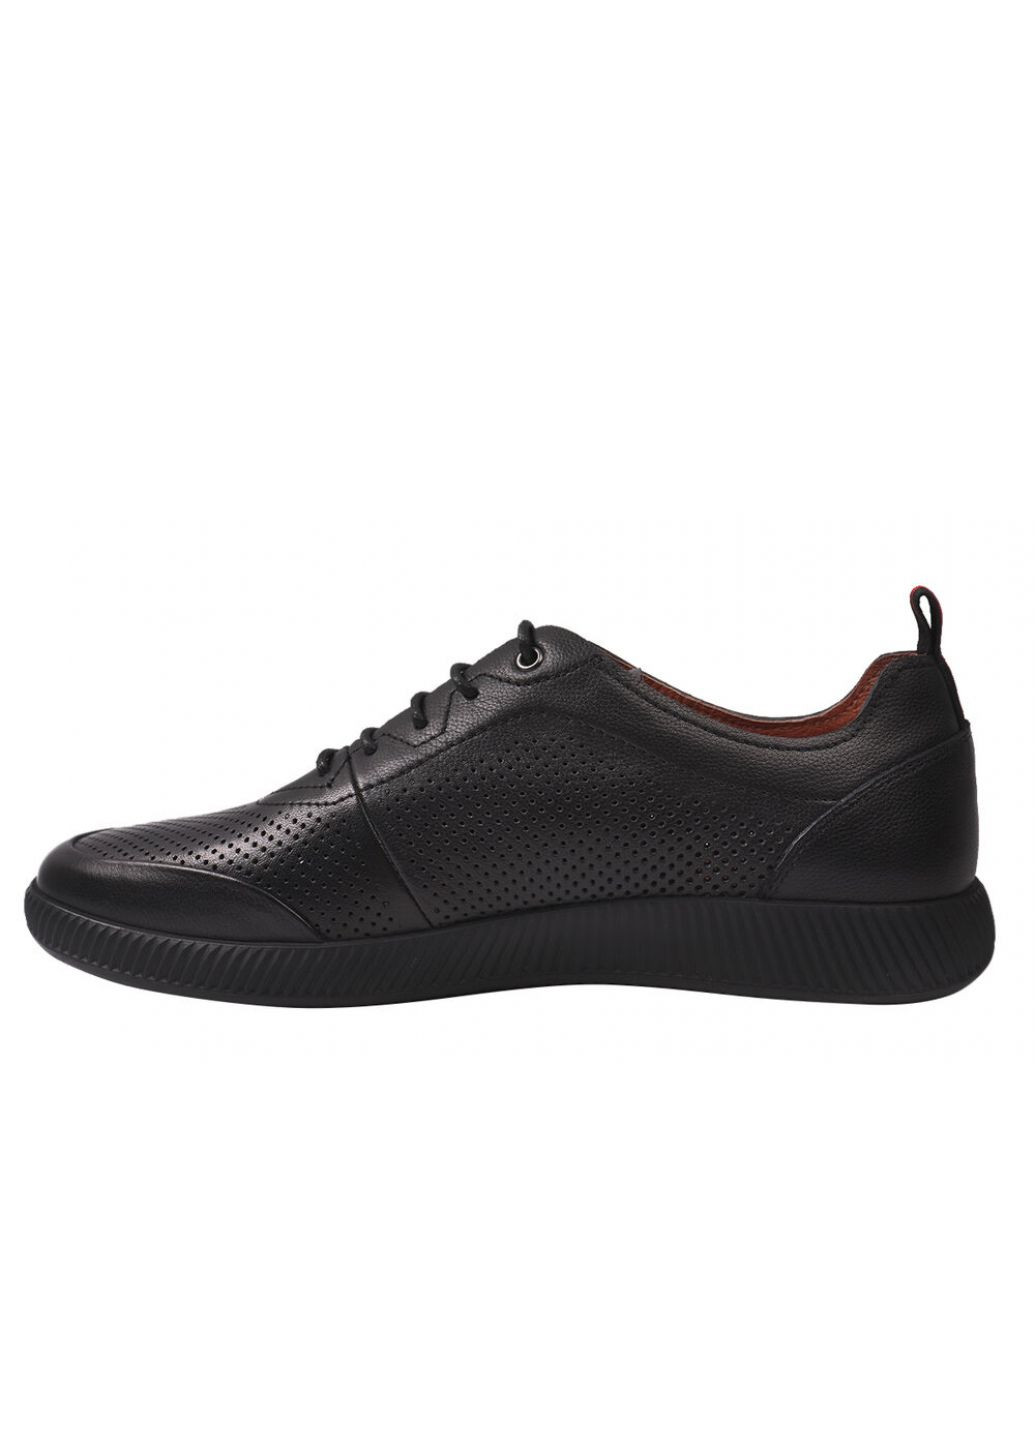 Черные кроссовки мужские из натуральной кожи, на низком ходу, на шнуровке, цвет черный, Anemone 169-21LTCP